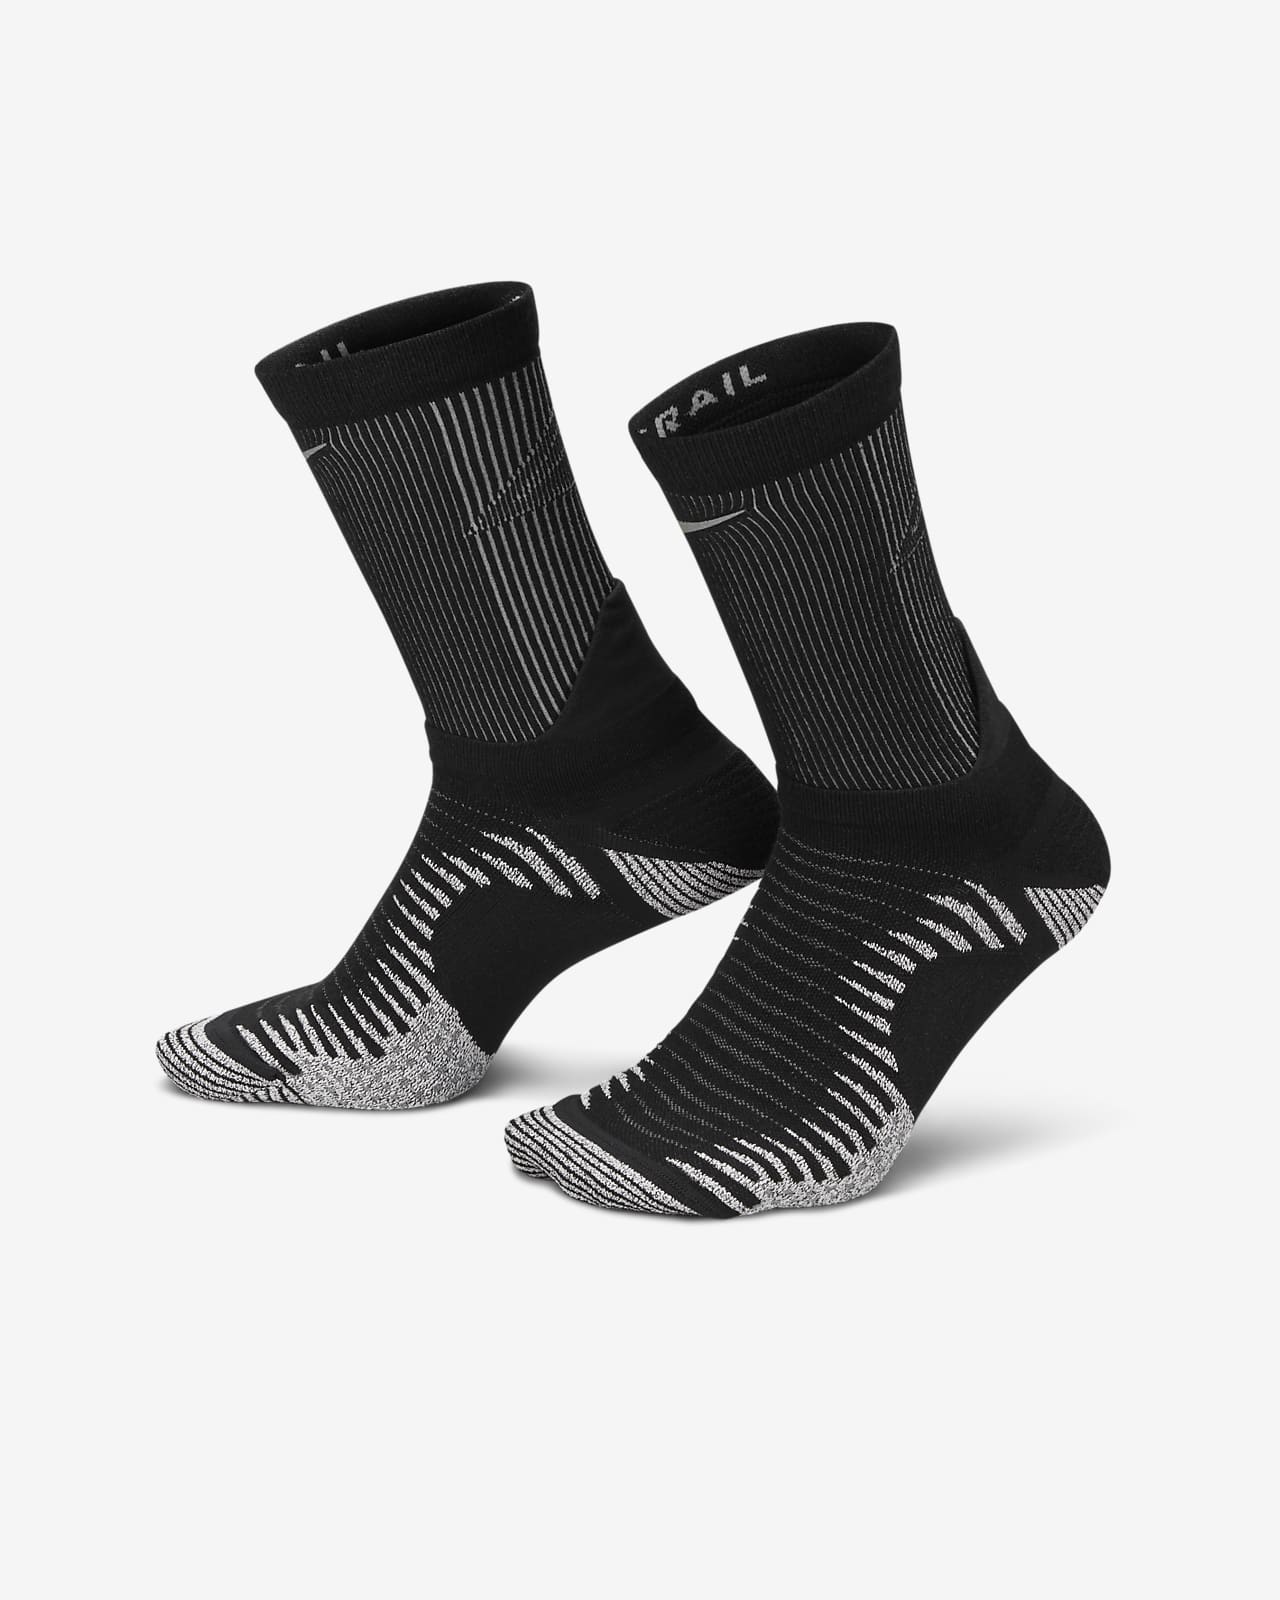 Nike Grip Lightweight Quarter Training Socks in White for Men